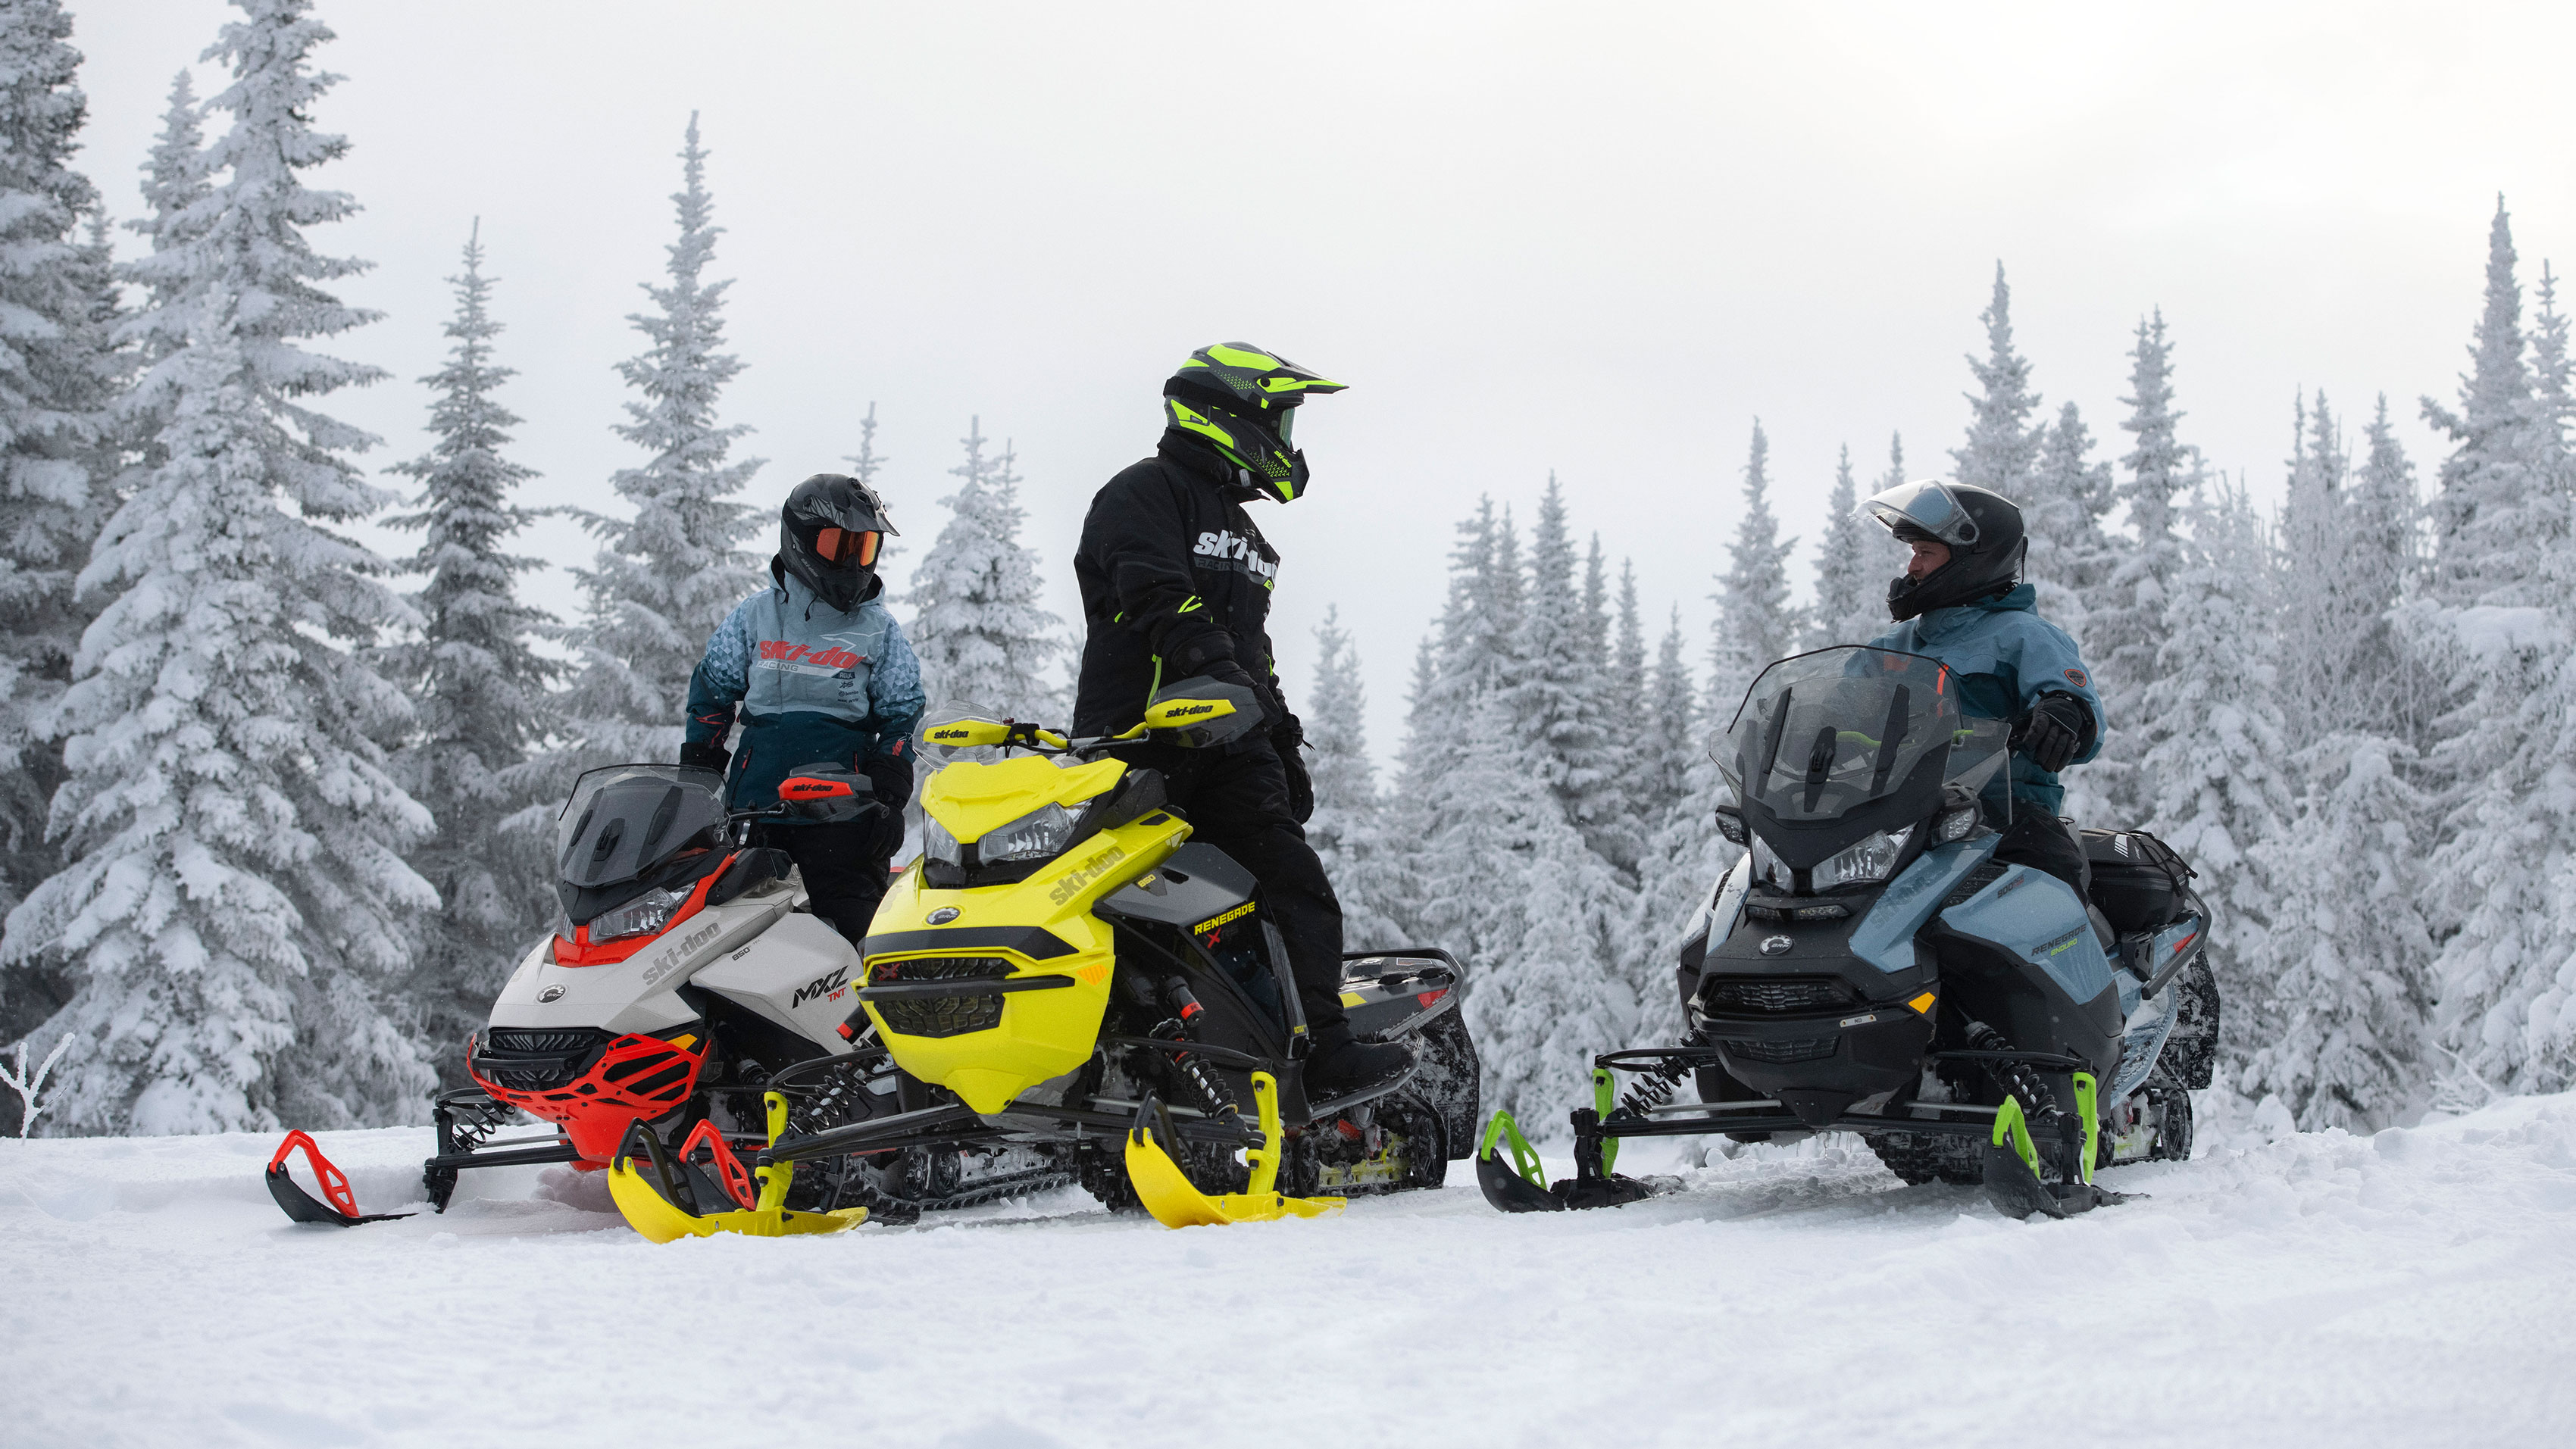 3 sürücü Ski-Doo kar motosikleti sürüşü sırasında konuşuyor